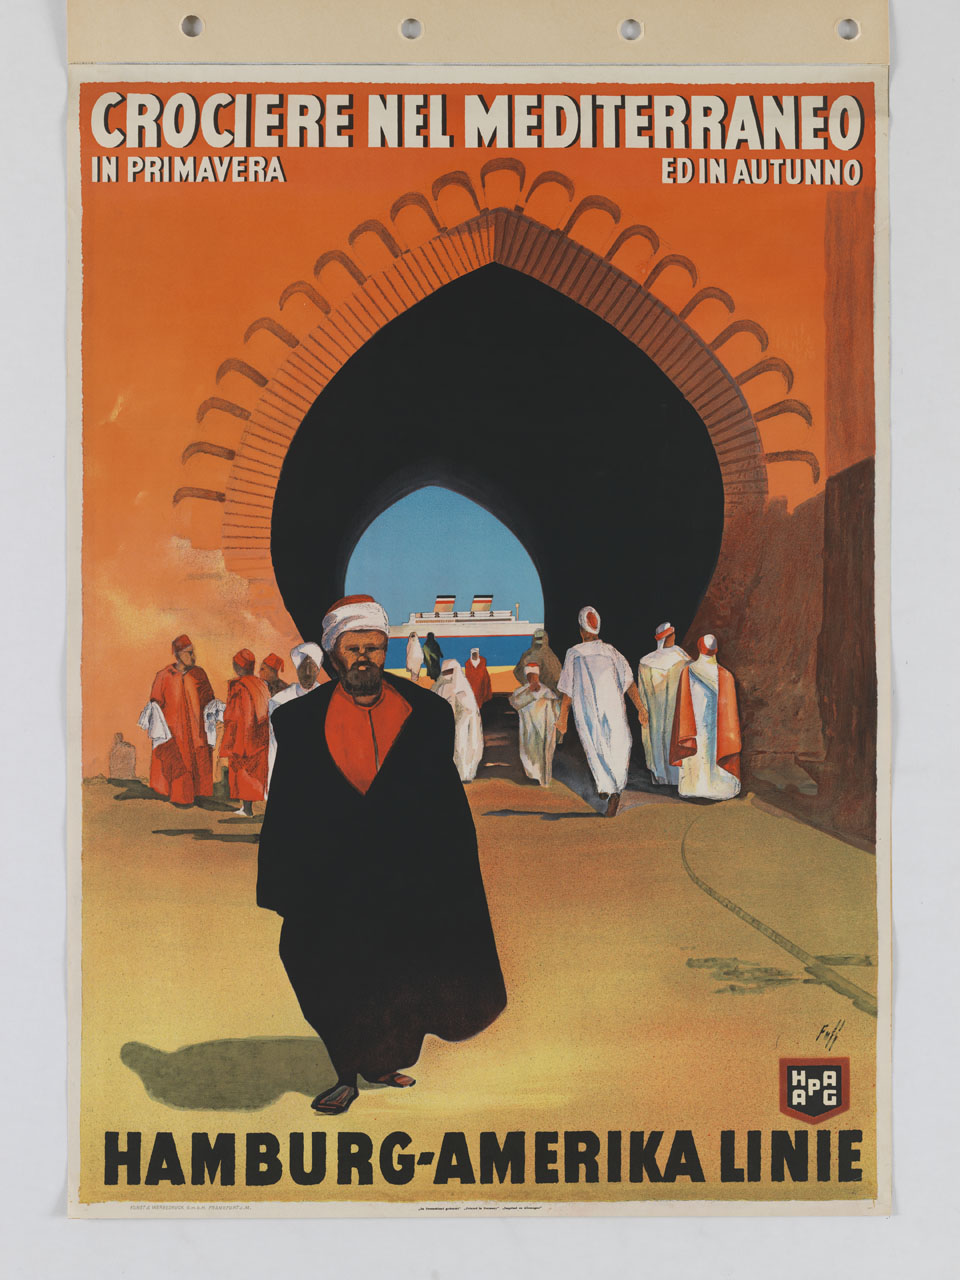 nordafricani in abito tradizionale davanti a un arco islamico inquadrante il mare con un transatlantico (manifesto) di Fuss (Fuß) Albert (sec. XX)